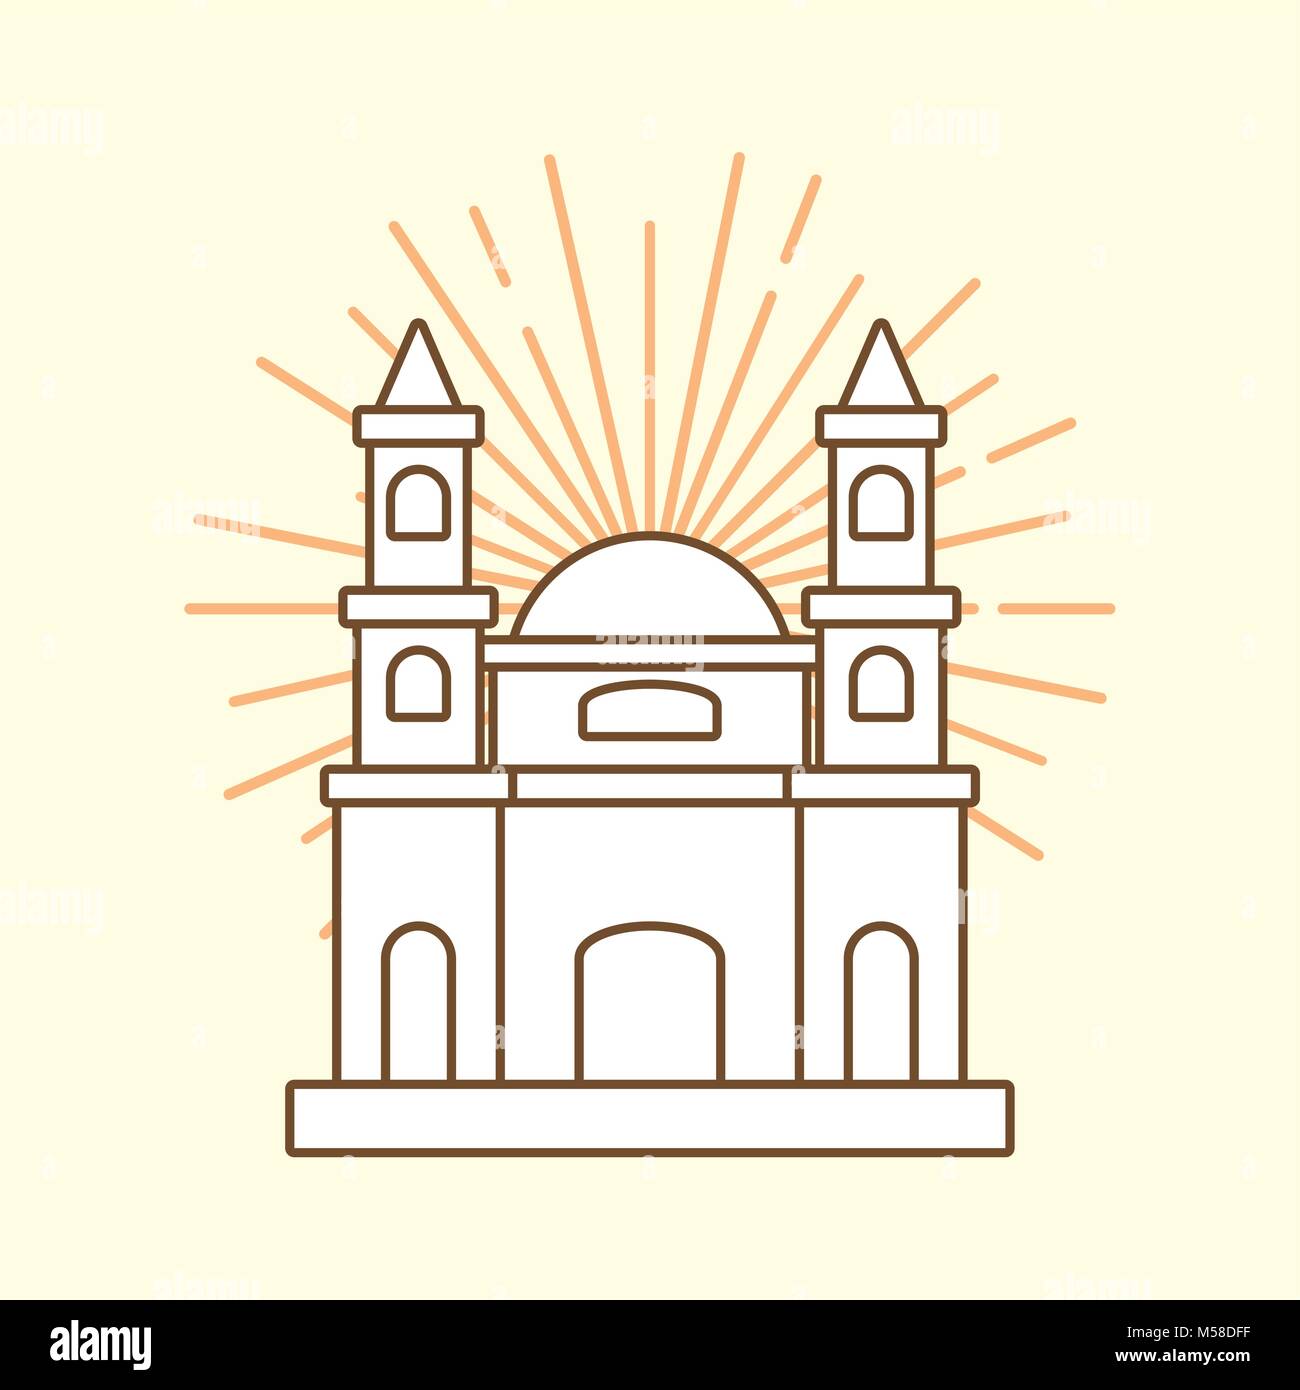 Concepto de diseño de México Ilustración del Vector